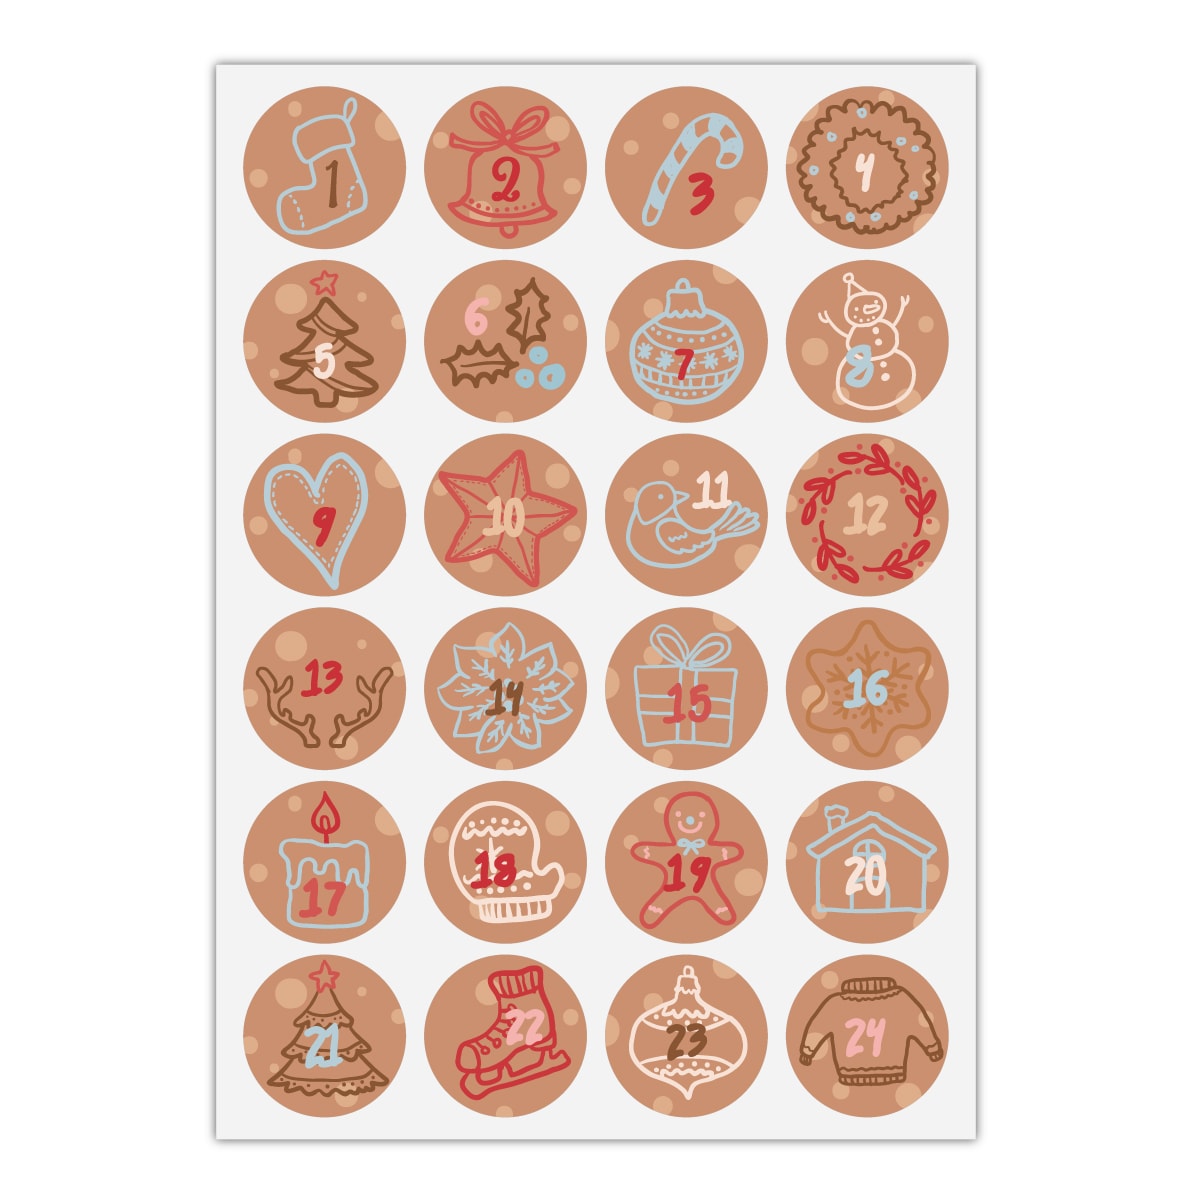 Kartenkaufrausch Sticker in braun: 24 gezeichnete Advents Aufkleber